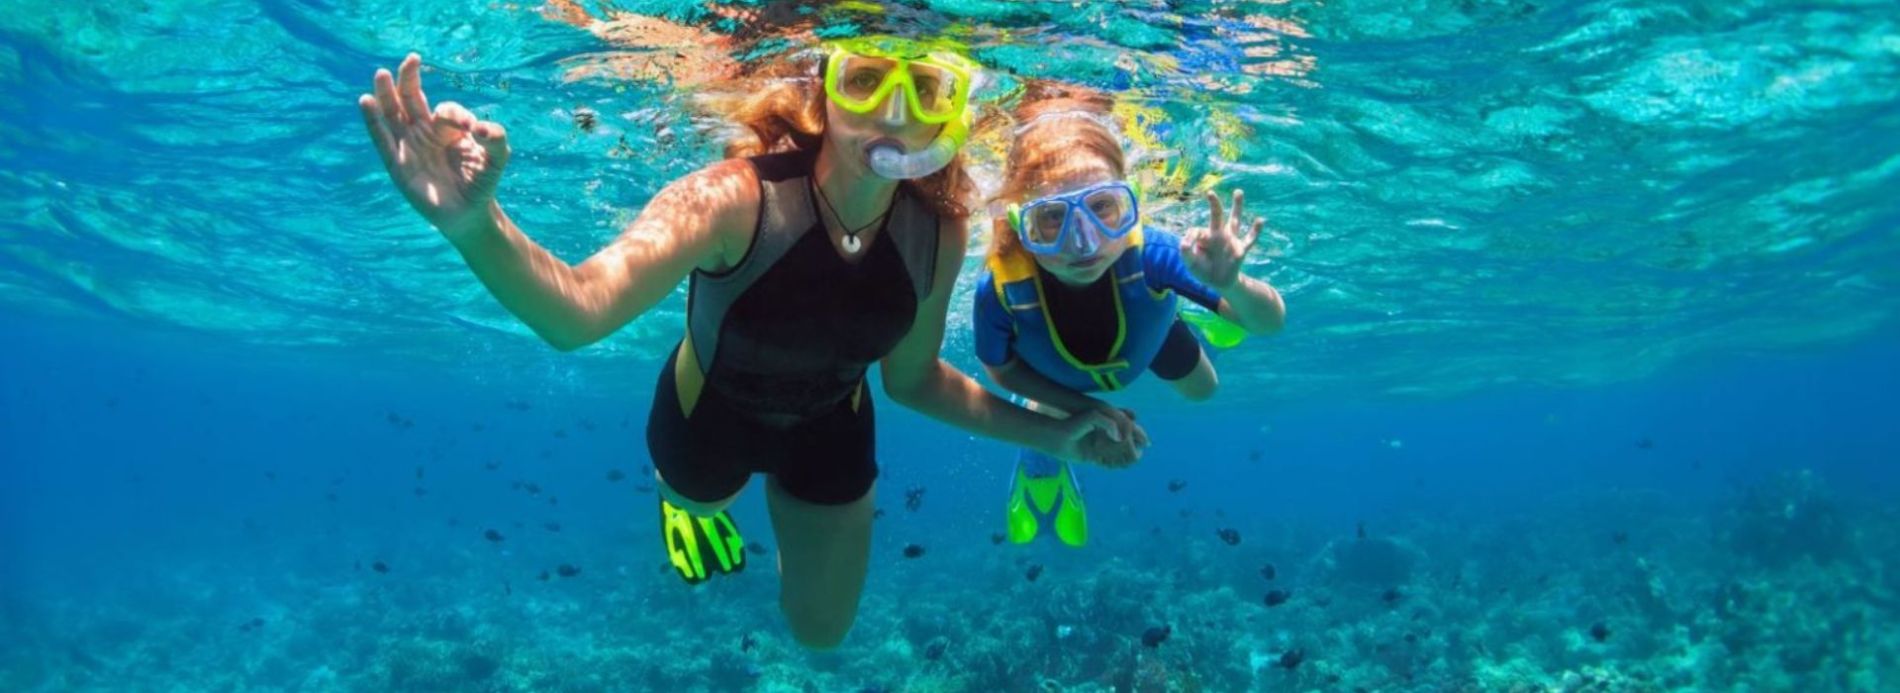 Two children snorkeling in Siesta Key, FL